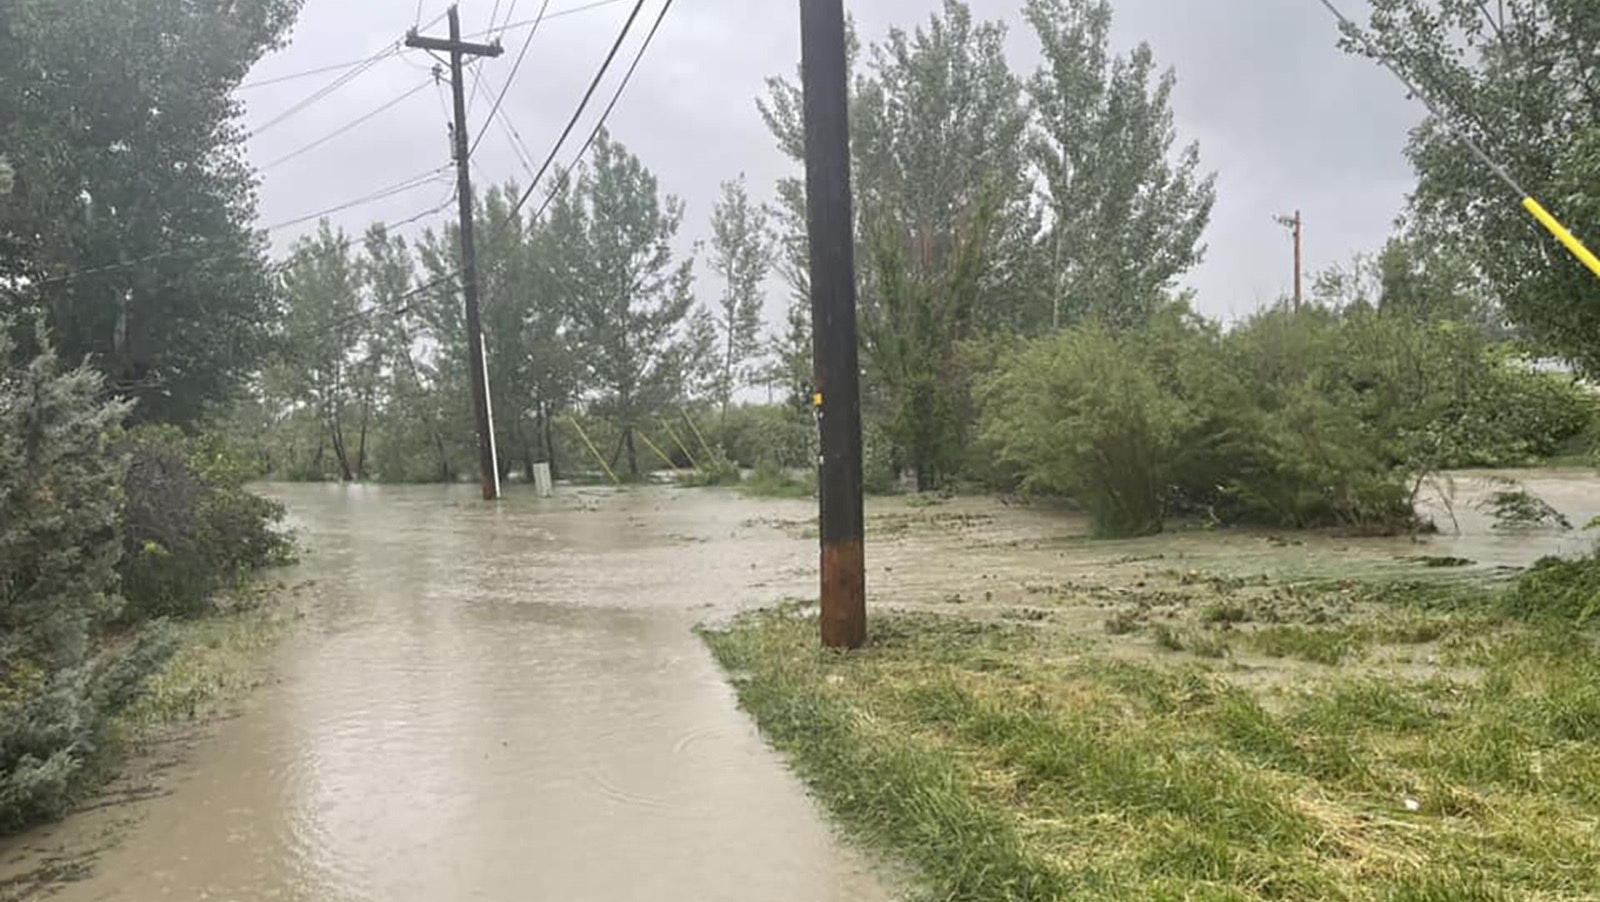 Flooding near Garden Creek in Casper on Thursday.